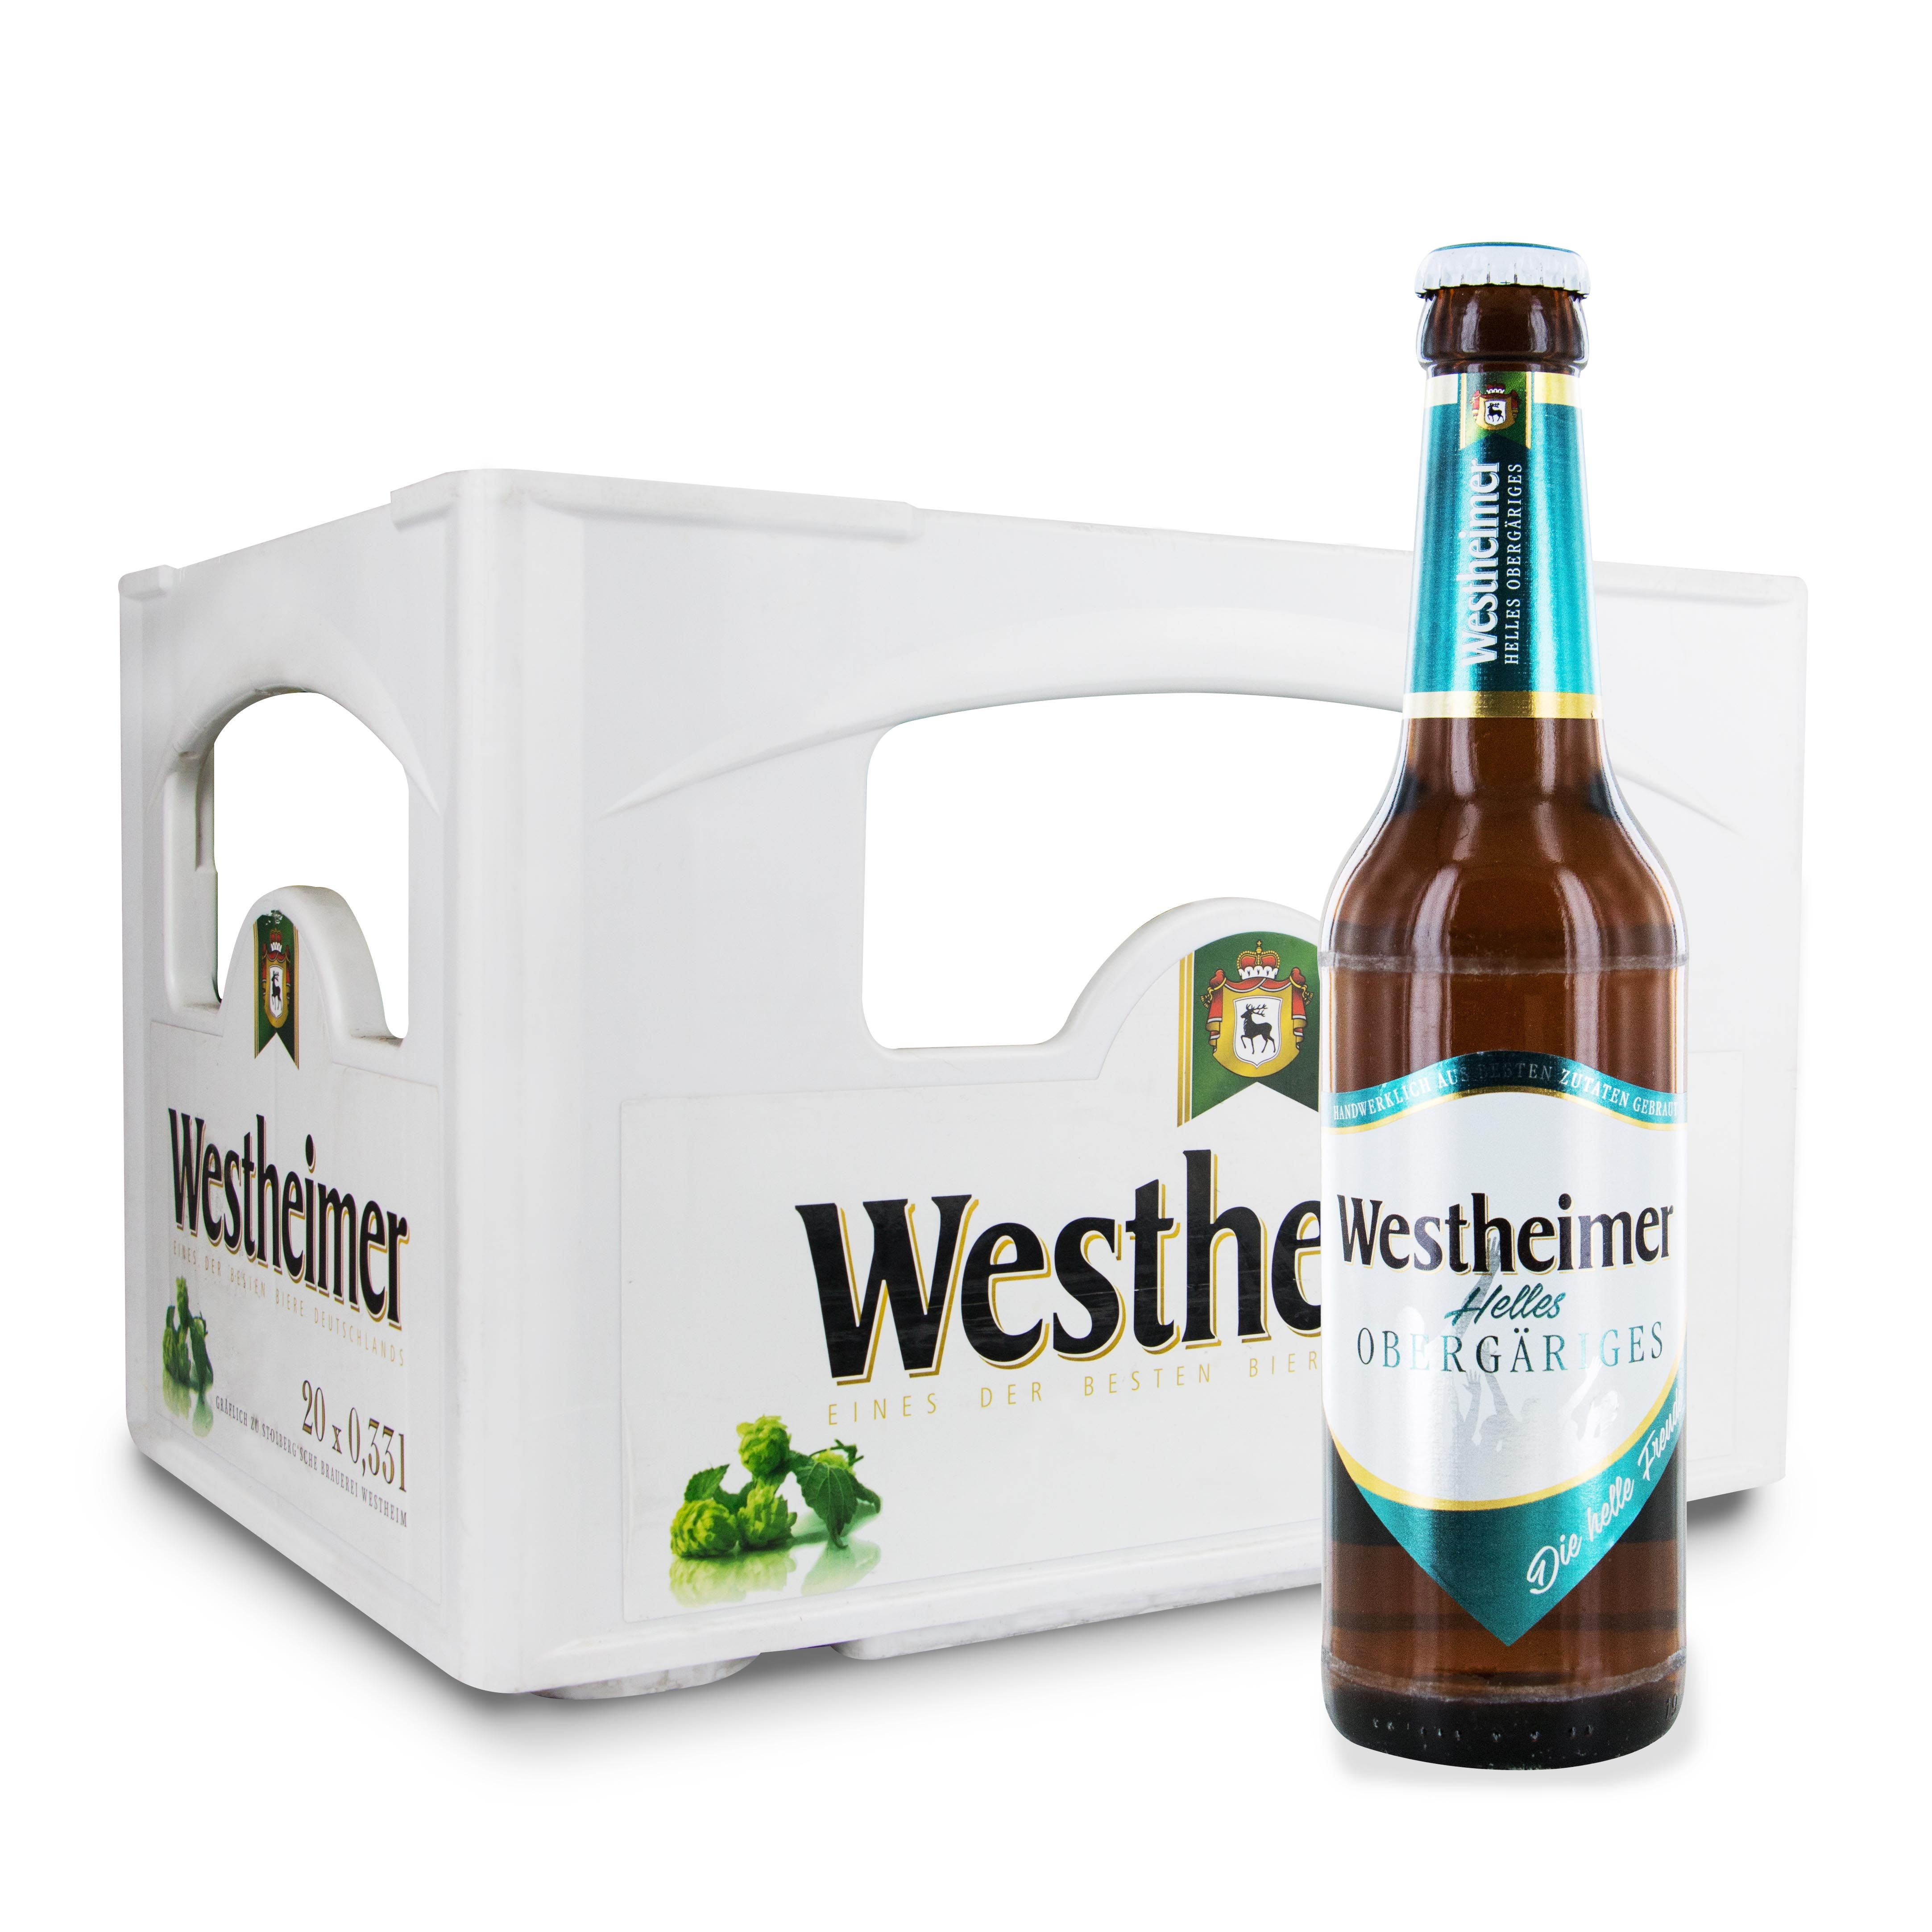 Westheimer helles Obergäriges Bier Einzelfasche